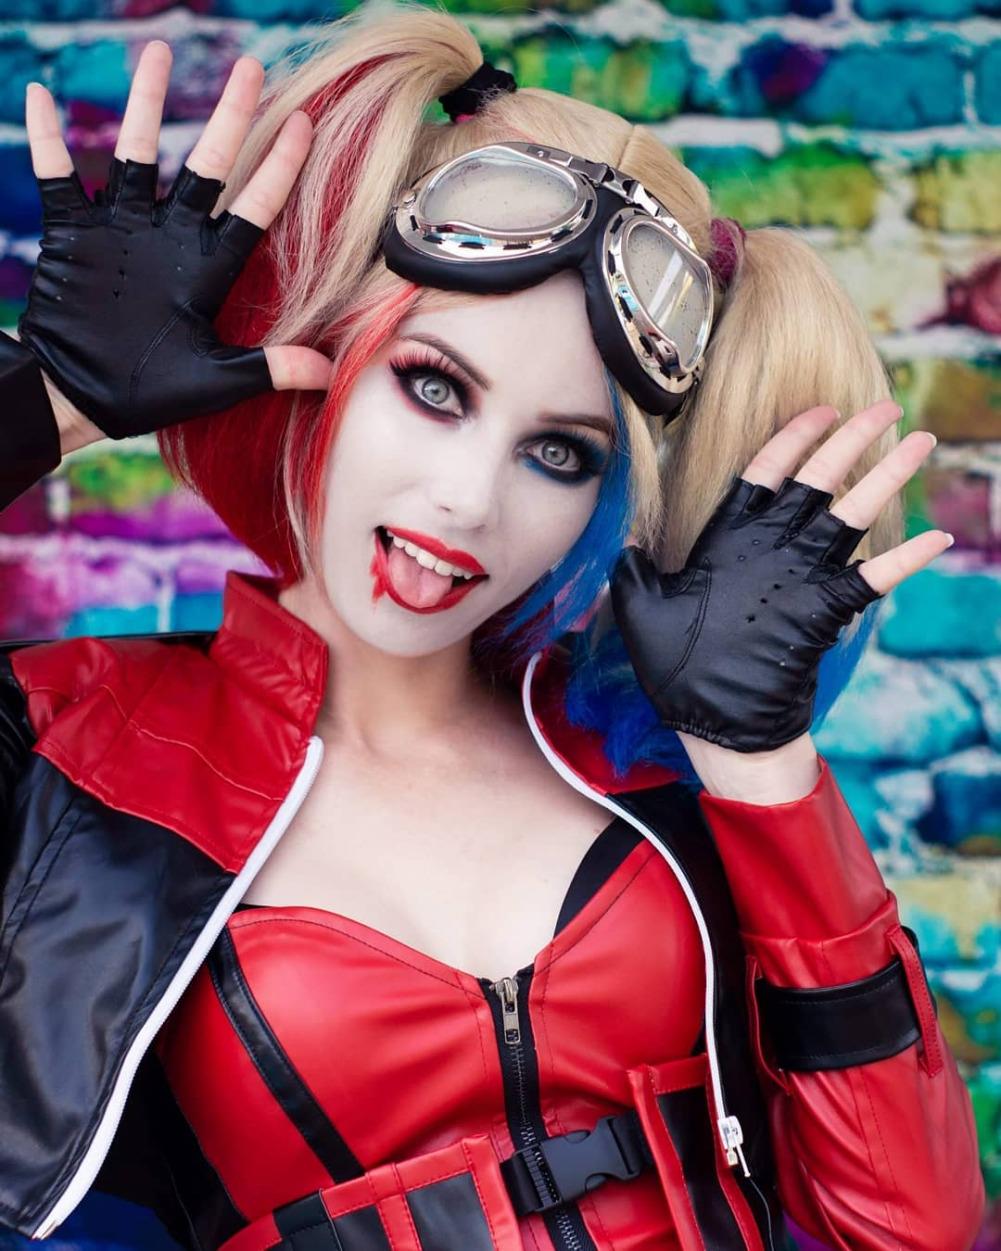  starbuxx as Harley Quinn